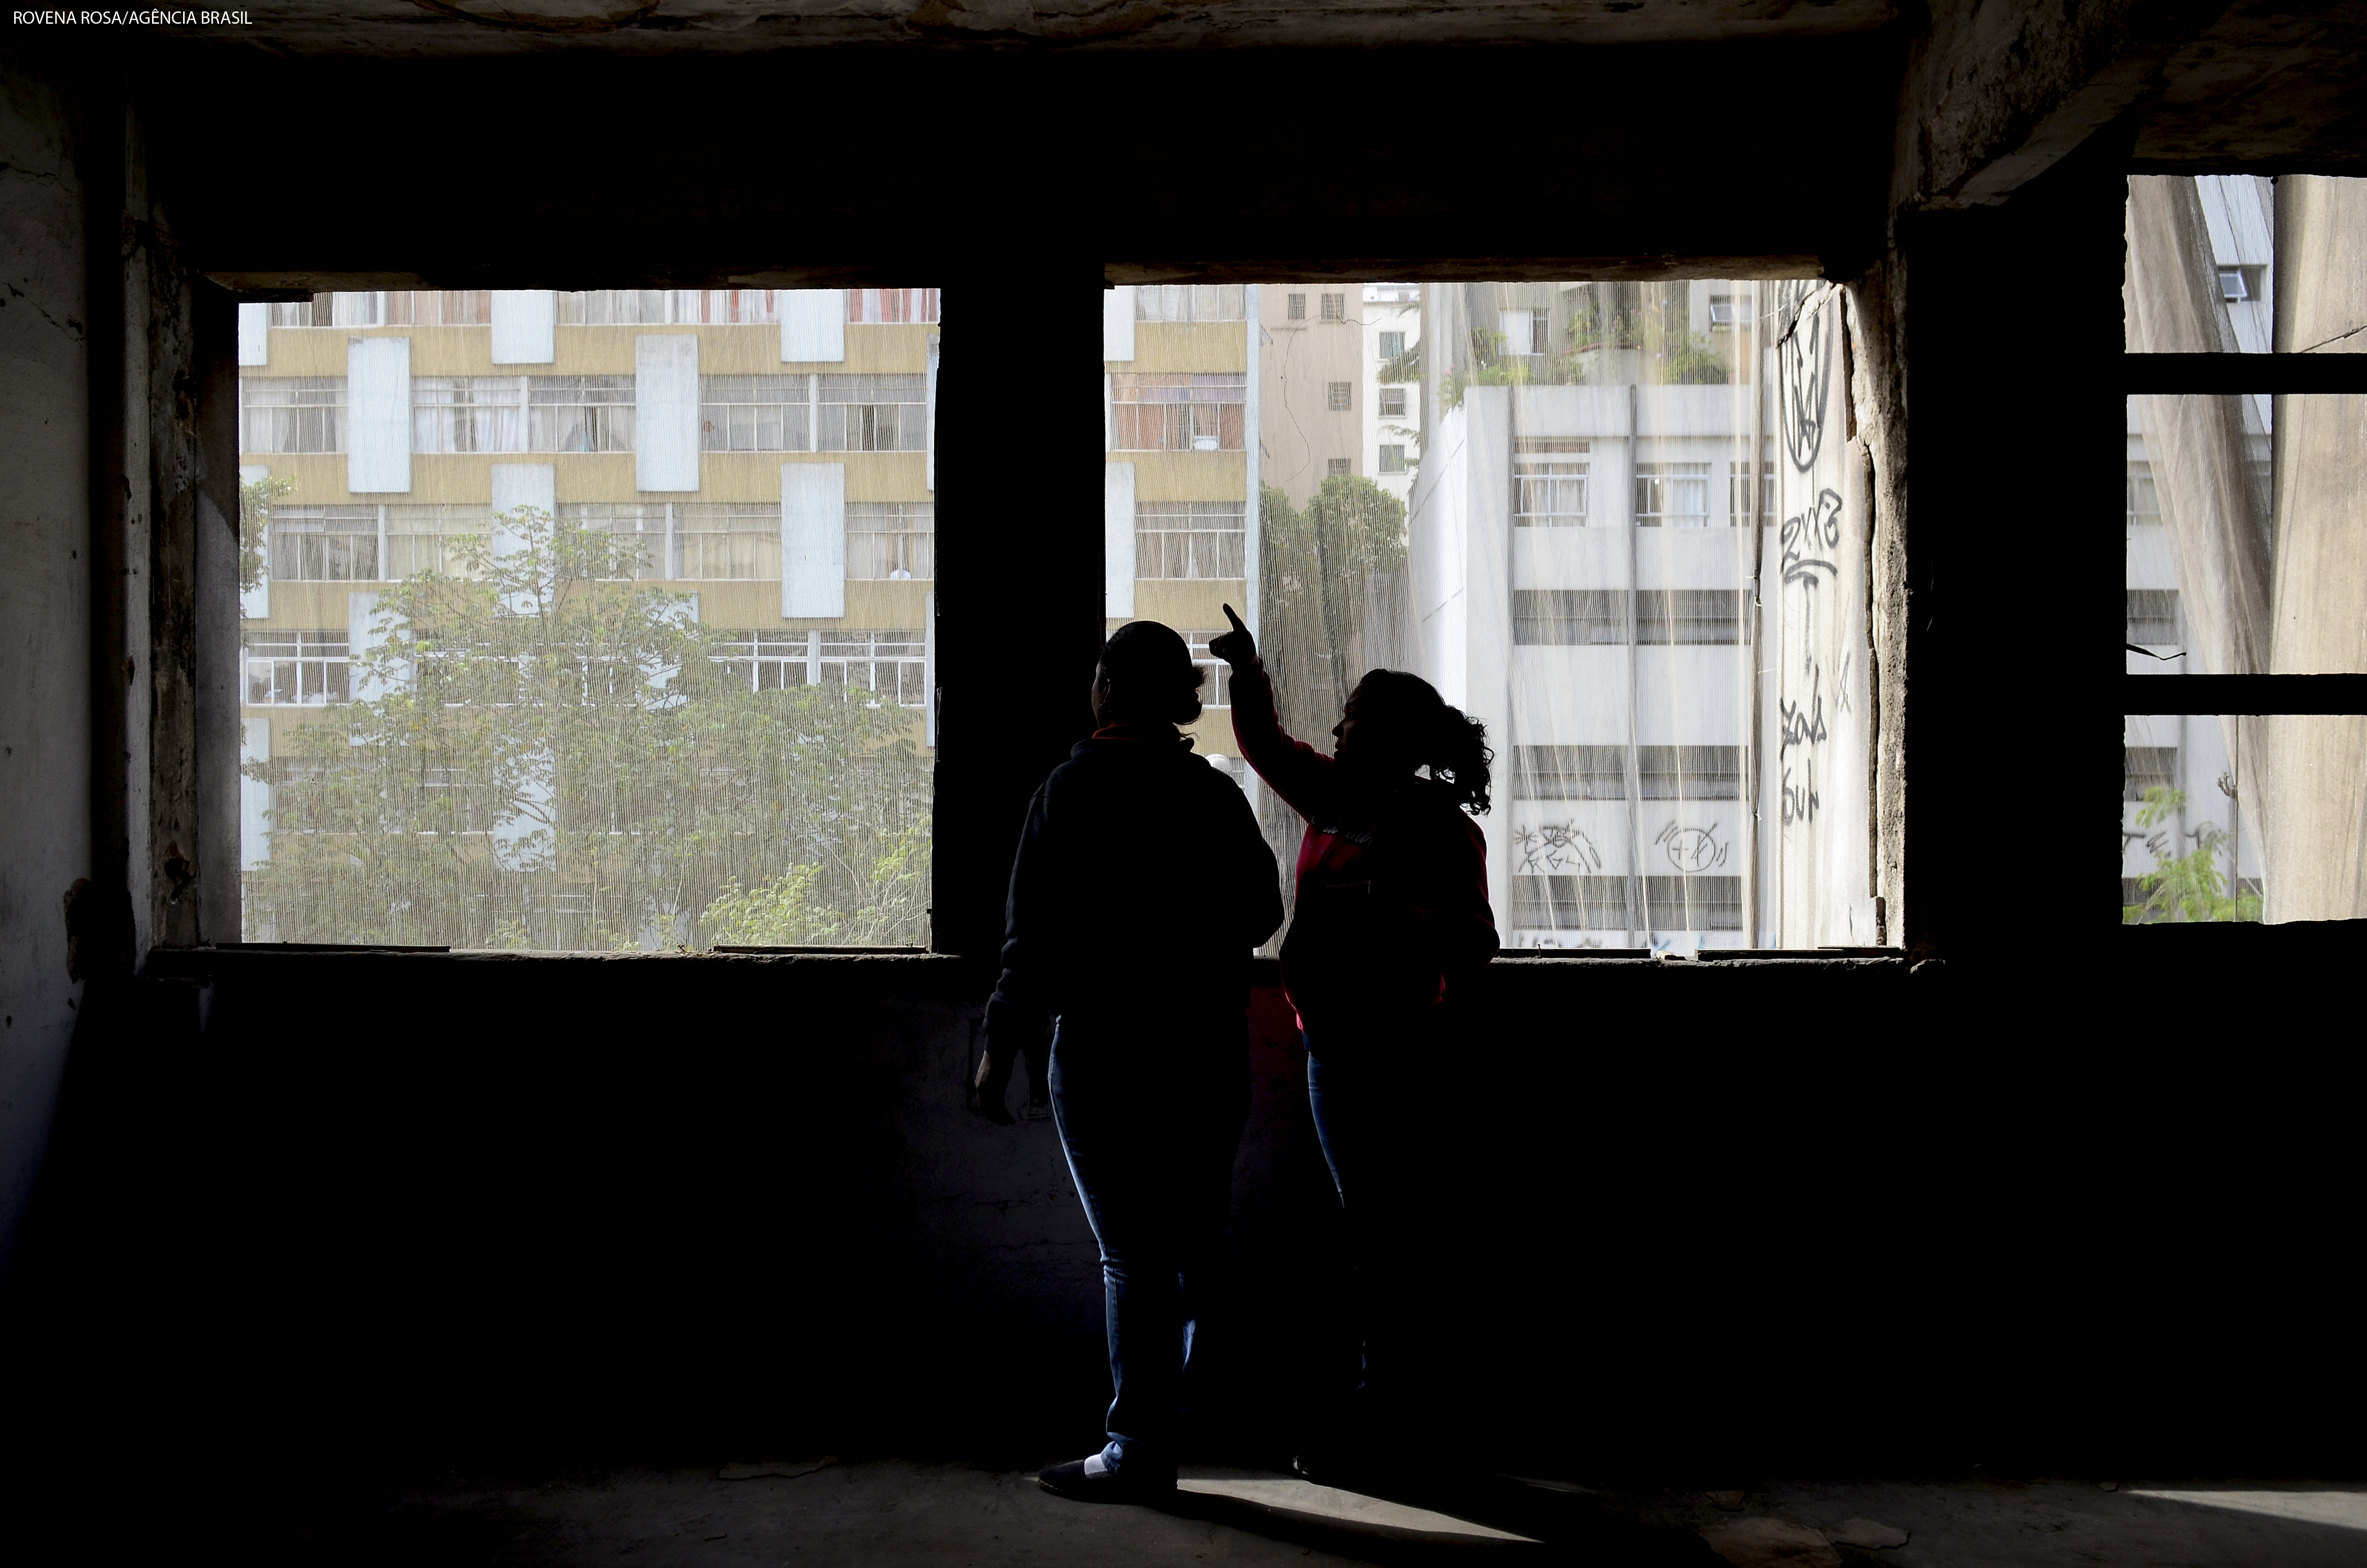 Moradia popular é a solução para revitalizar os centros urbanos no Brasil